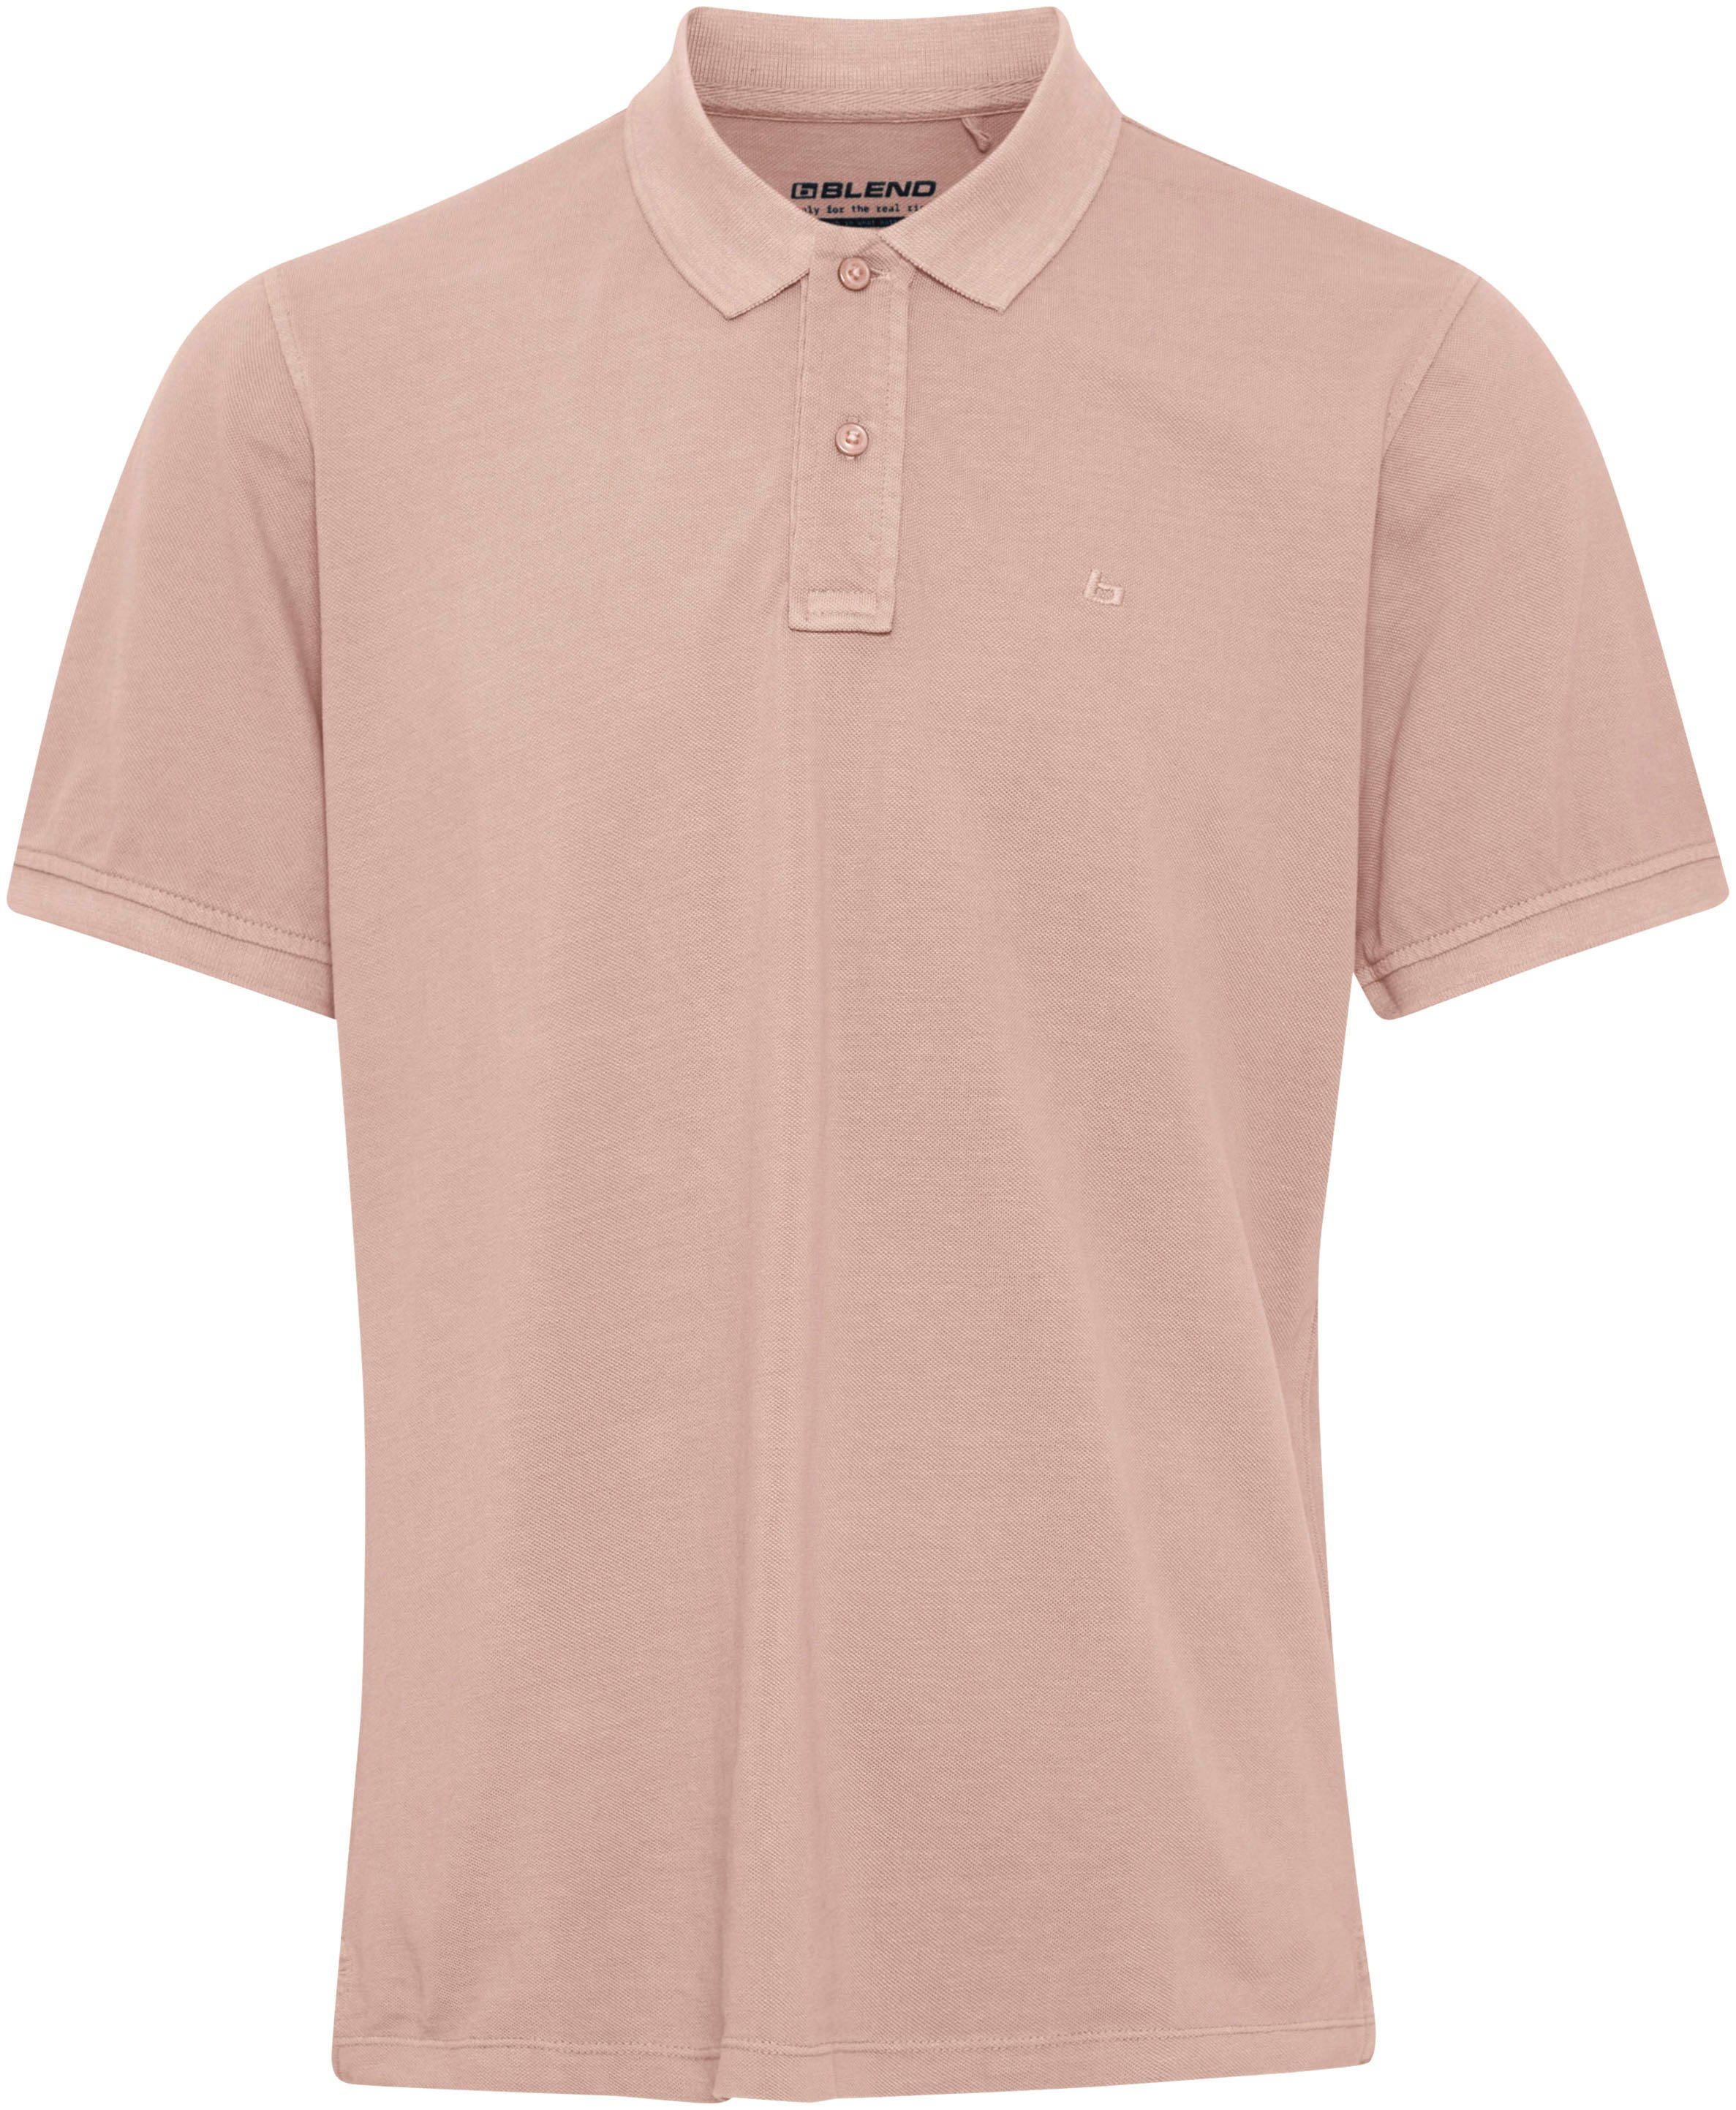 Vorzüglich Blend Poloshirt BL-Poloshirt pink